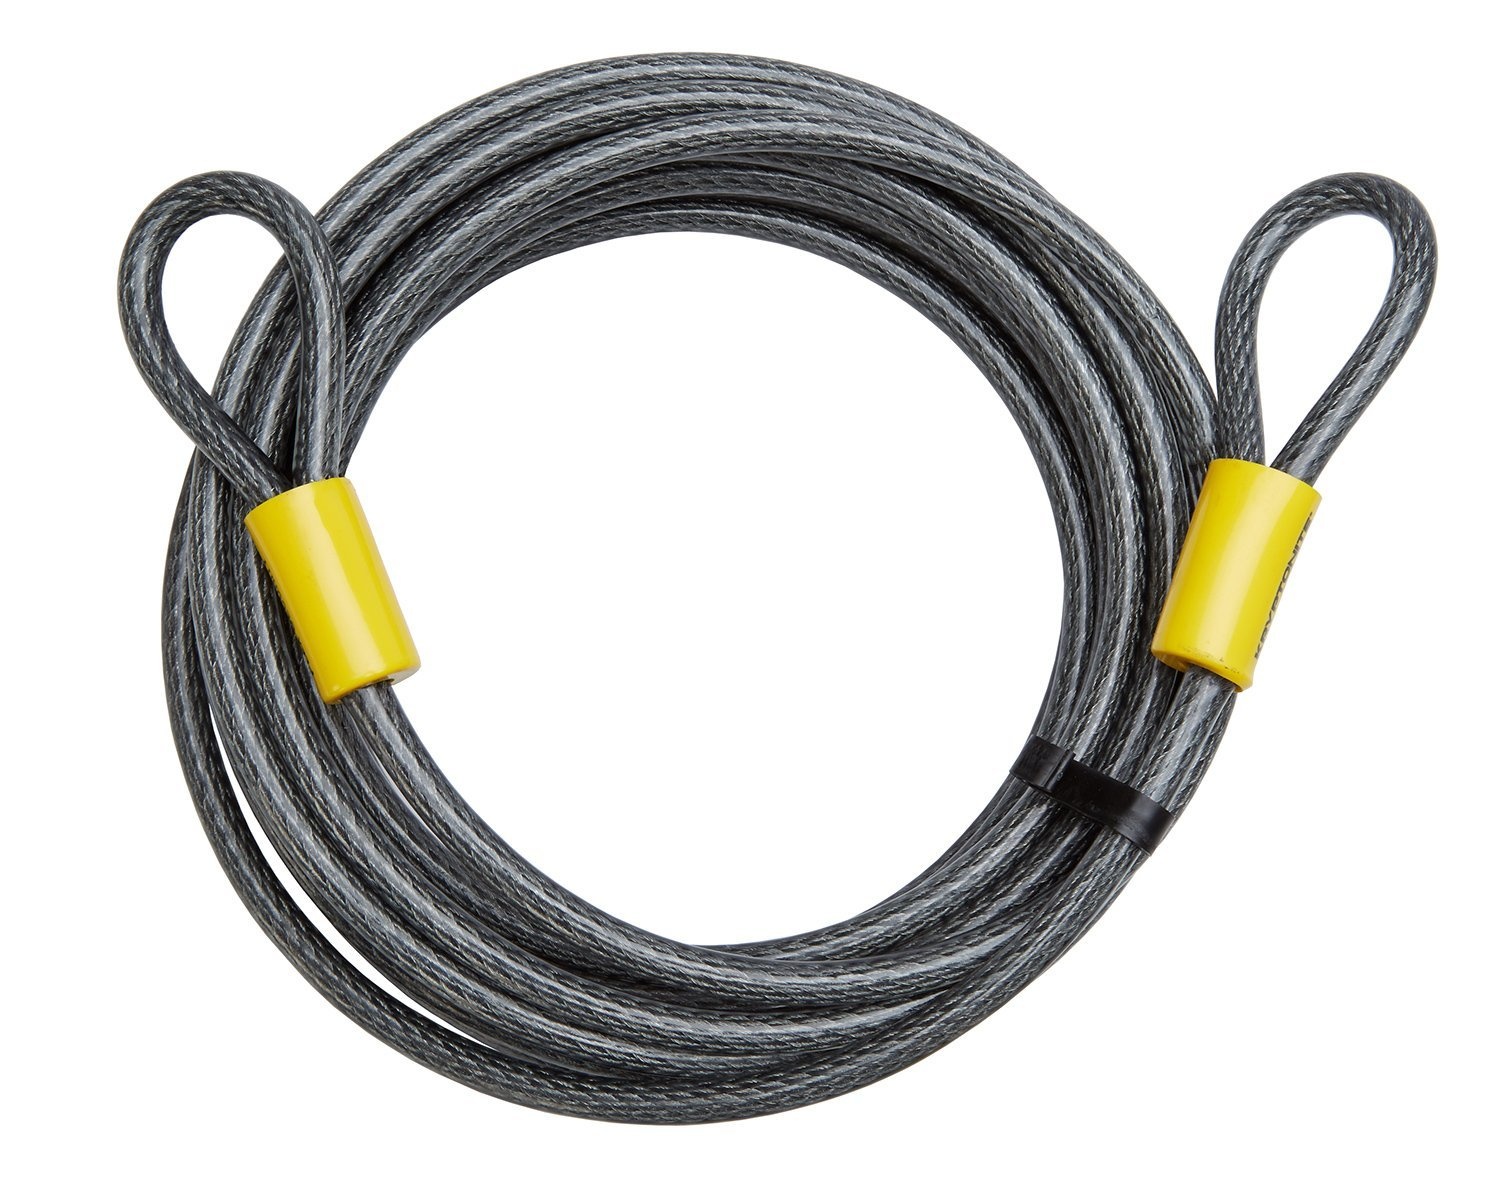 Kryptonite Looped Kabel Kryptoflex 3010 Kædelås 10mmx930cm - Cykellås